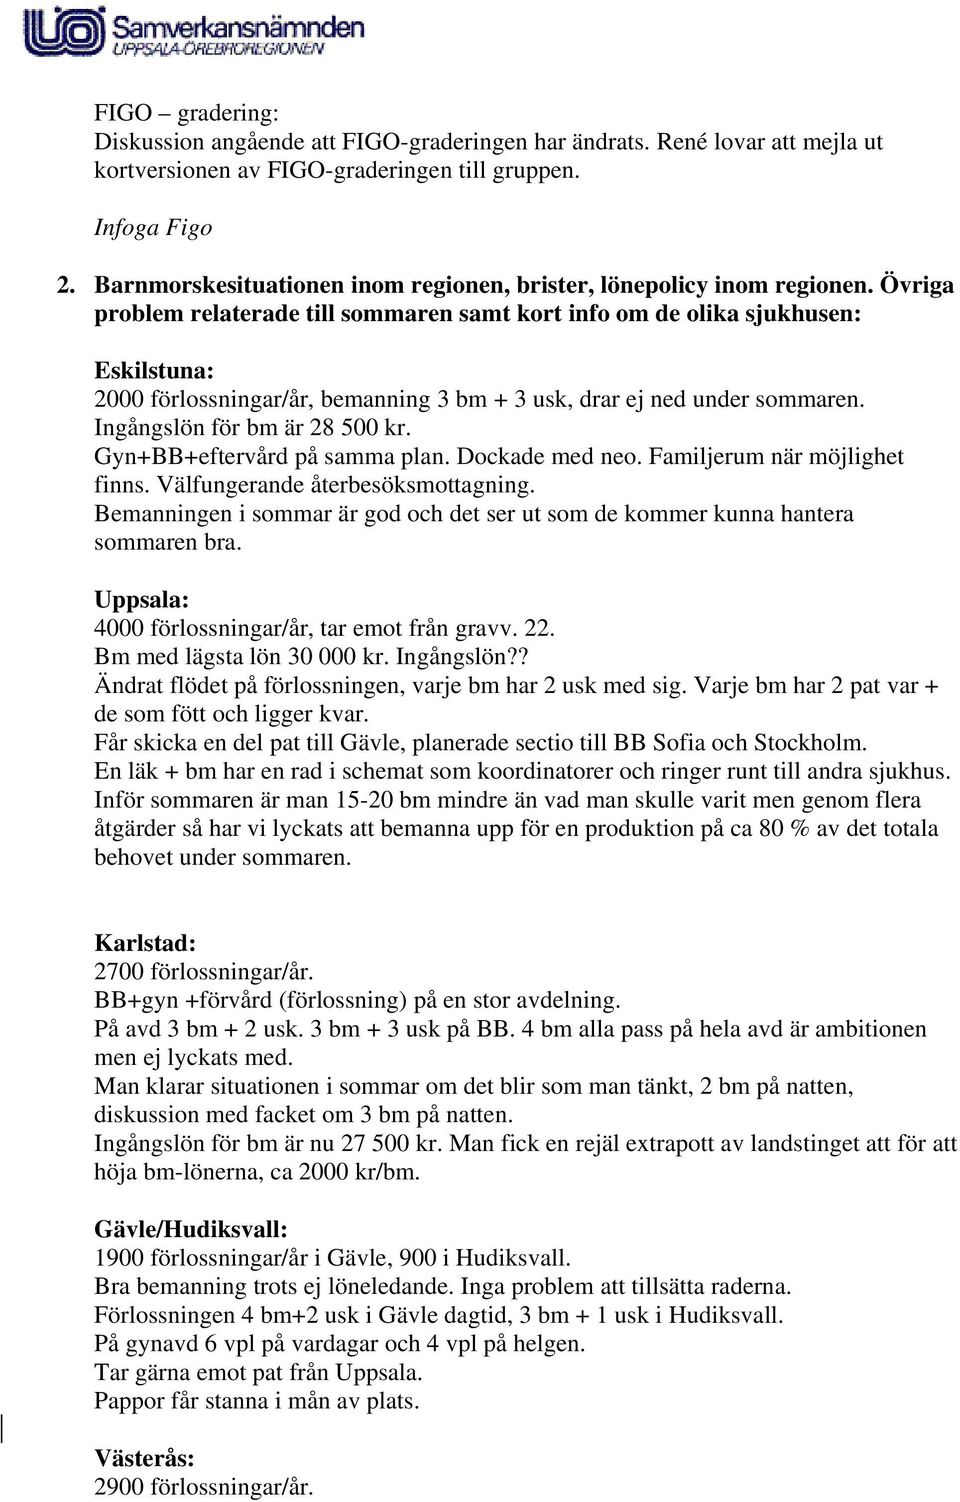 Övriga problem relaterade till sommaren samt kort info om de olika sjukhusen: Eskilstuna: 2000 förlossningar/år, bemanning 3 bm + 3 usk, drar ej ned under sommaren. Ingångslön för bm är 28 500 kr.